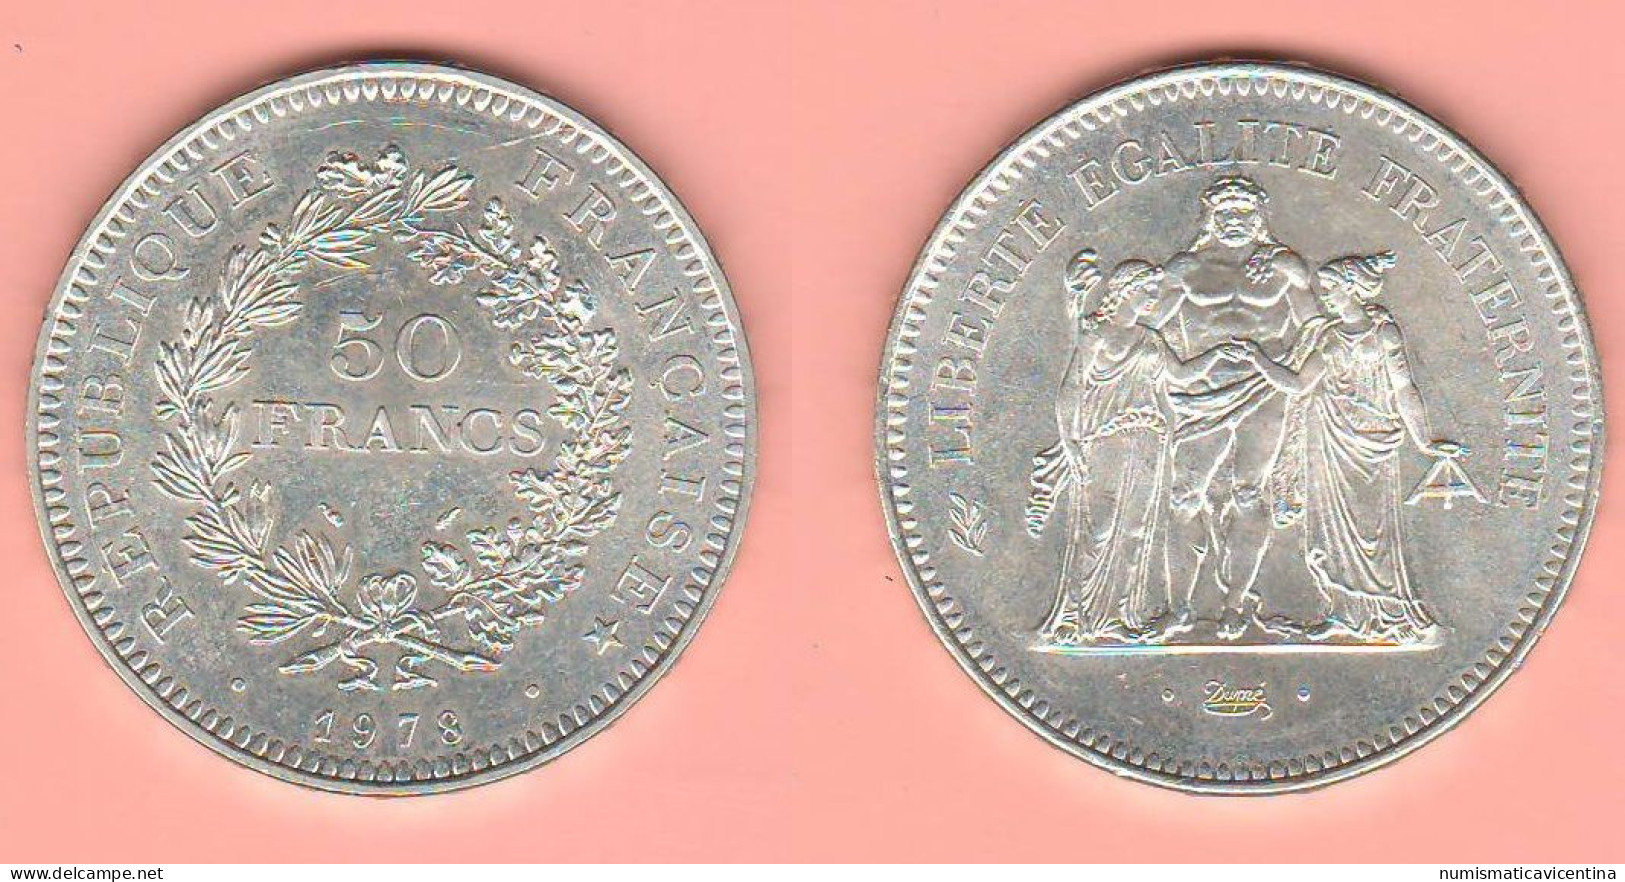 Francia 50 Francs 1978 France Hercules Ercole Silver Coin - 50 Francs